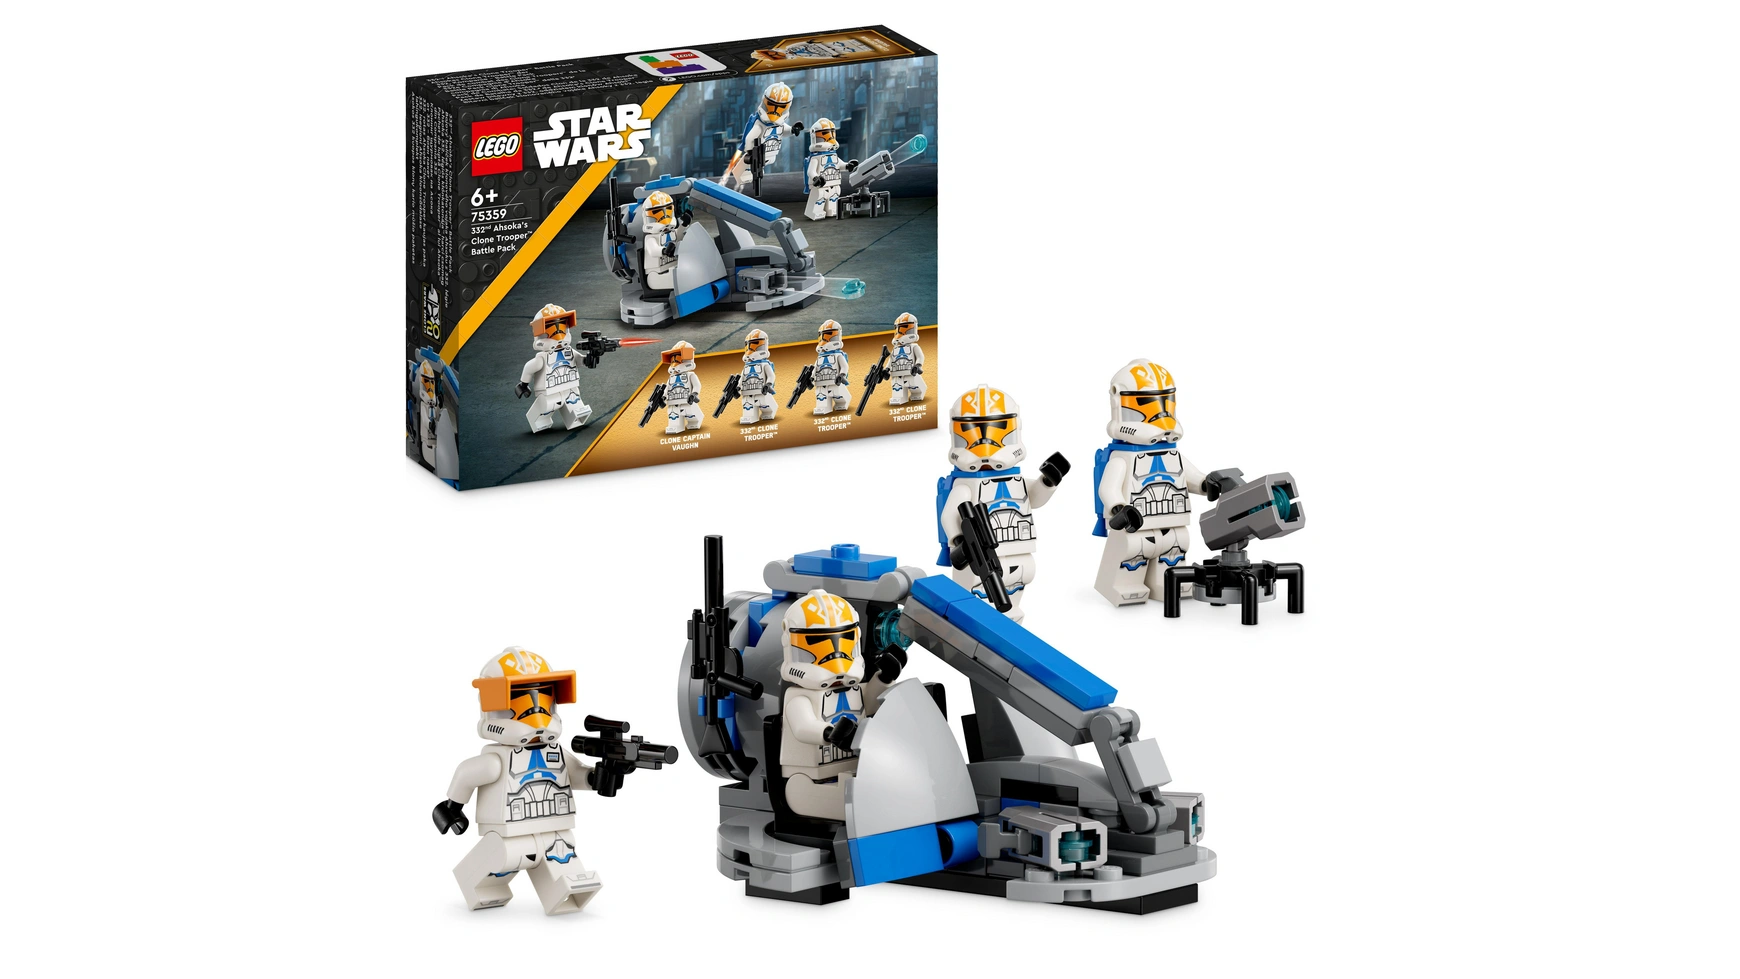 Lego Star Wars Солдат-клон Асоки из 332-й роты Боевой набор набор минифигурок солдат клонов и асоки тано 6 шт 4 5 см пакет